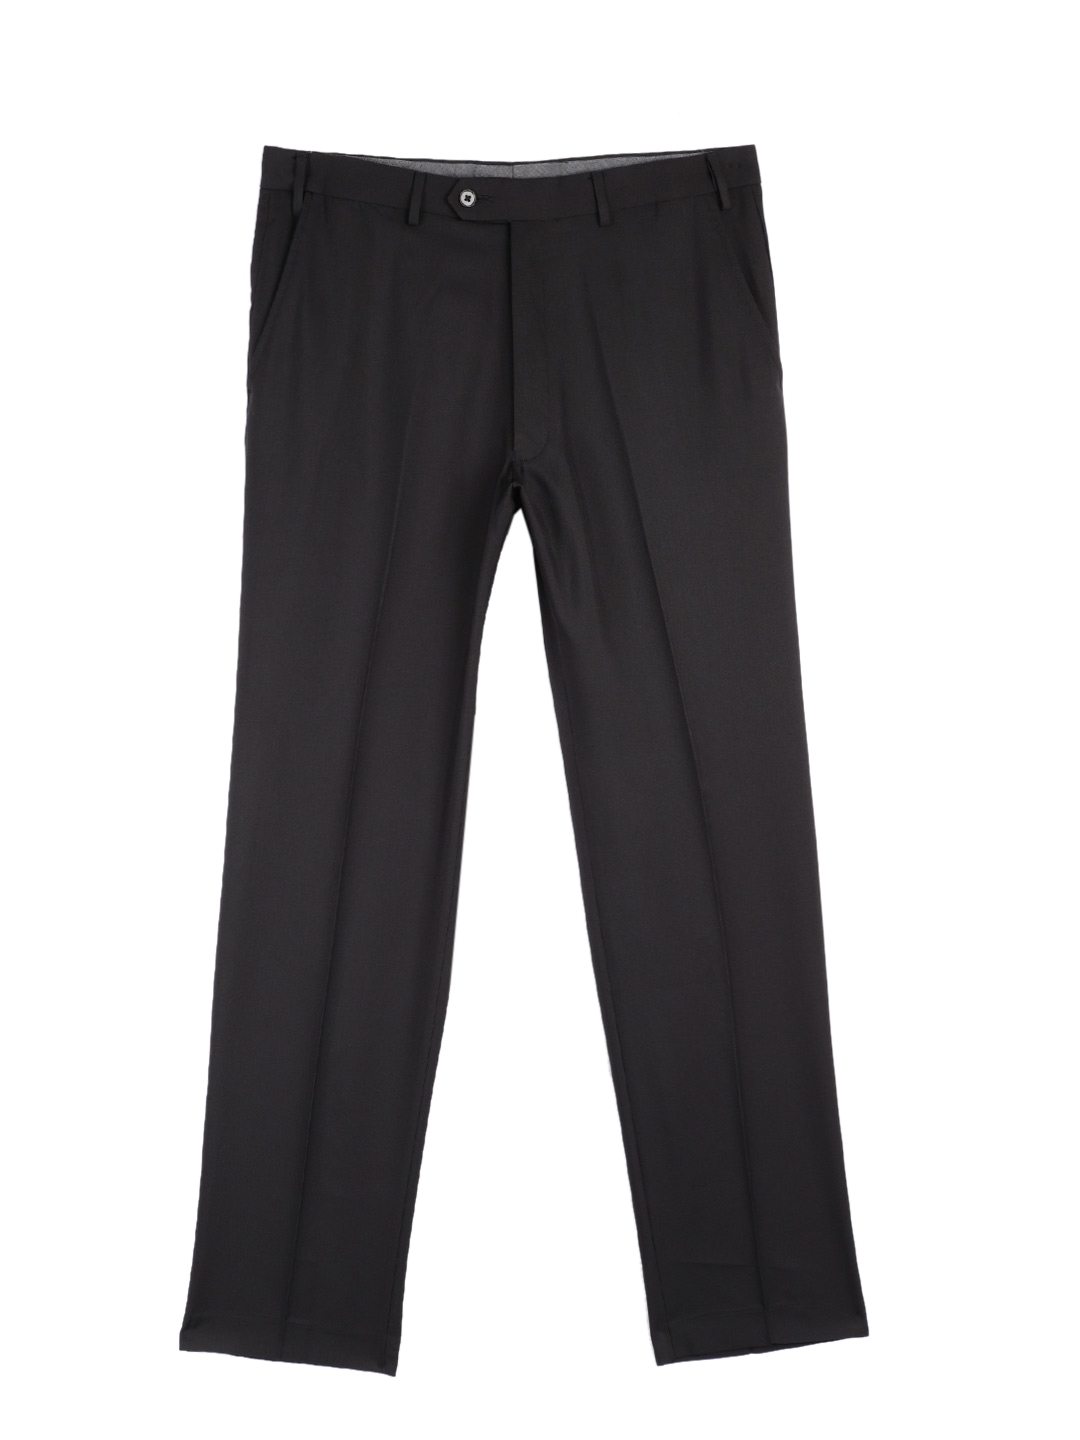 Buy Marks & Spencer Men Black Regular Fit Solid Formal Trousers ...